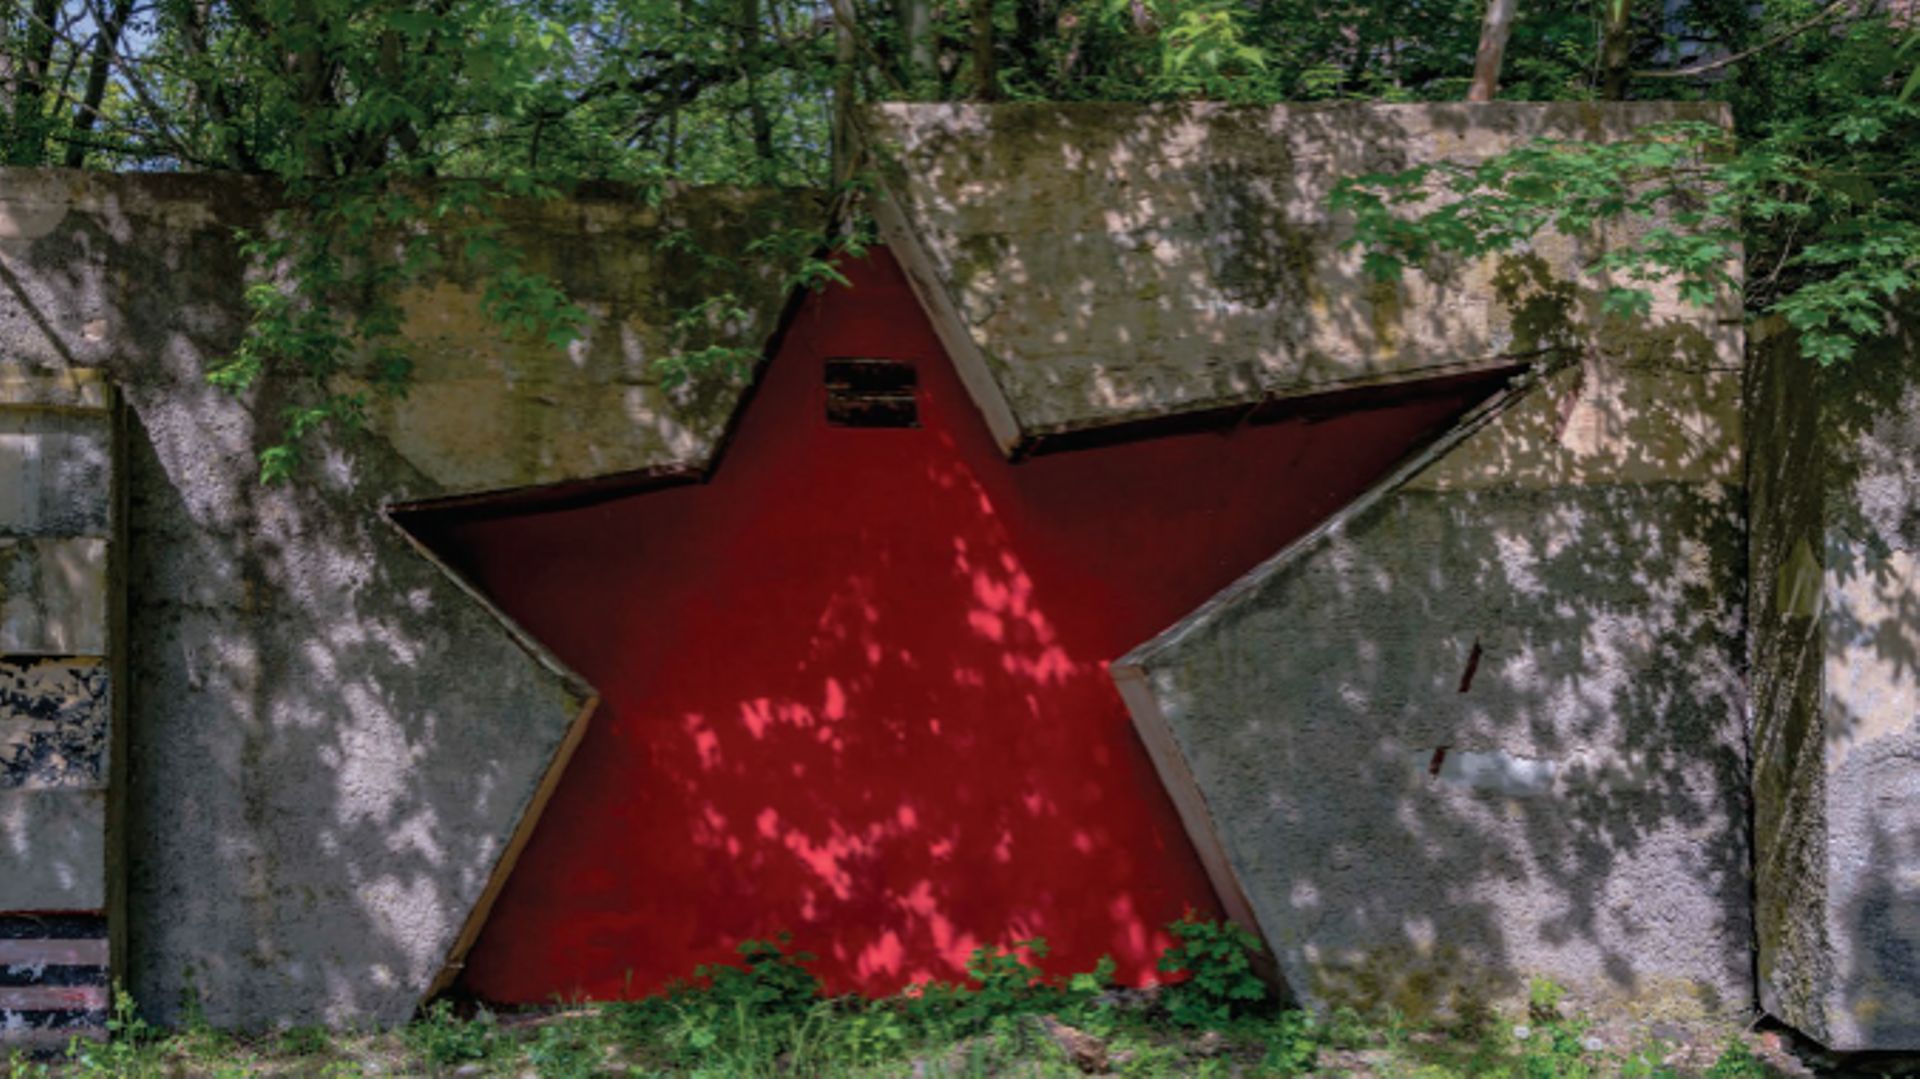 Une étoile rouge fraîchement repeinte, un monument abandonné célébrant la victoire soviétique contre l'Allemagne nazie se situe dans une ville de garnison non loin de Berlin